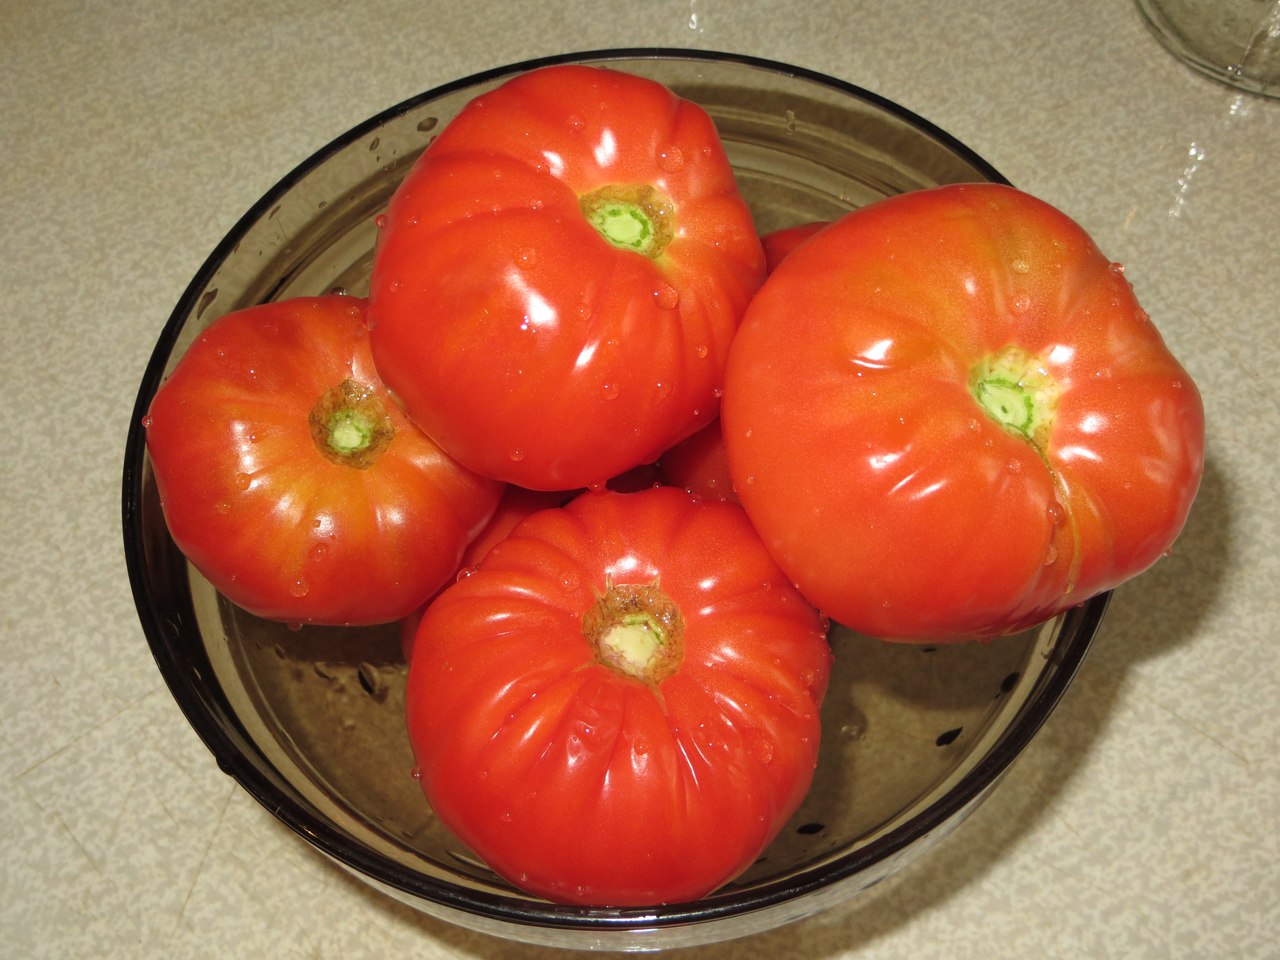 Описание лучших сортов помидоров для засолки и консервирования